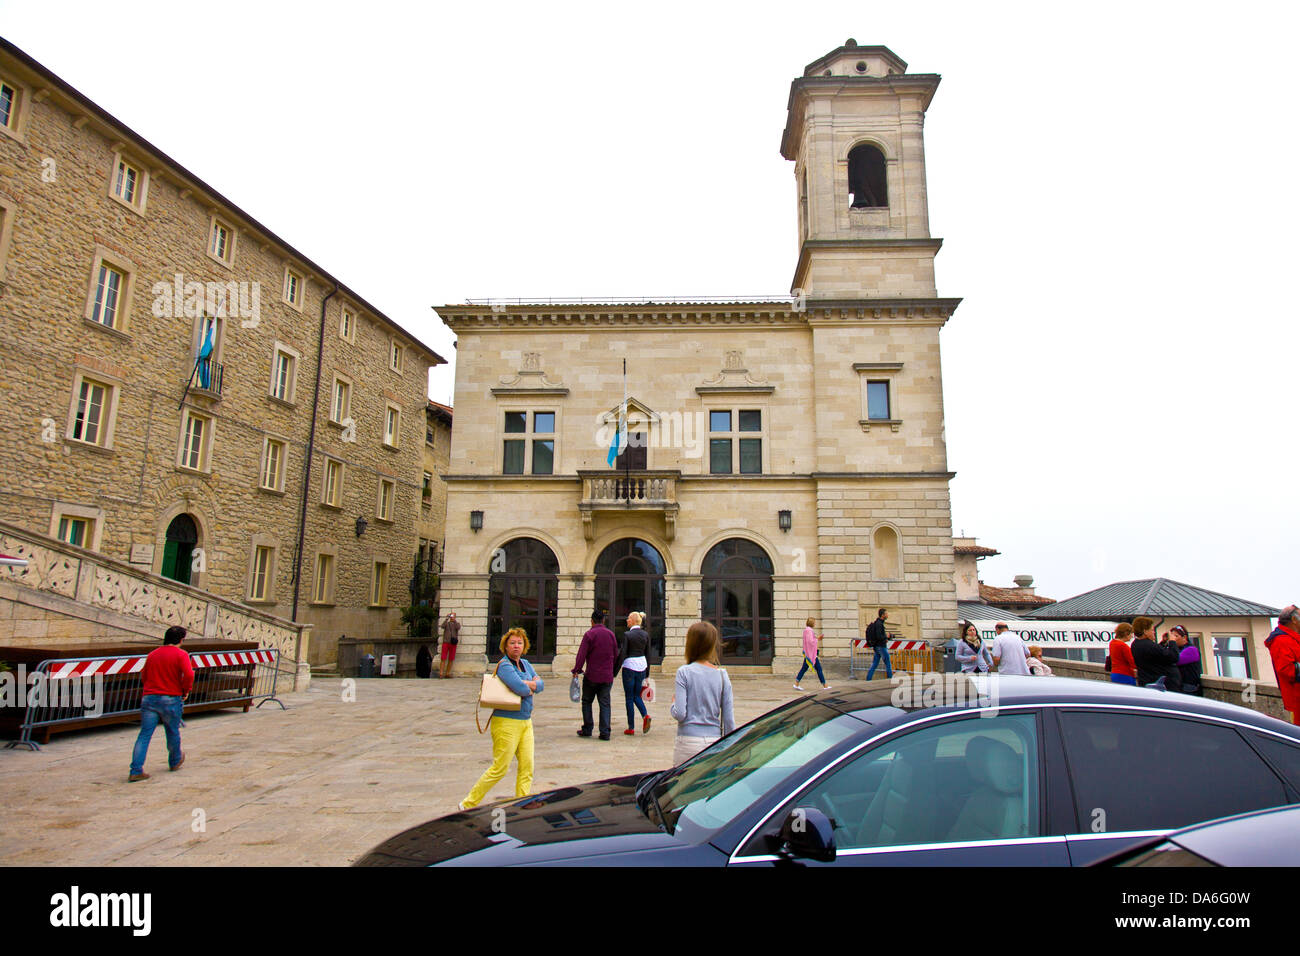 Statua della Libertà , historical town center of San Marino Stock Photo